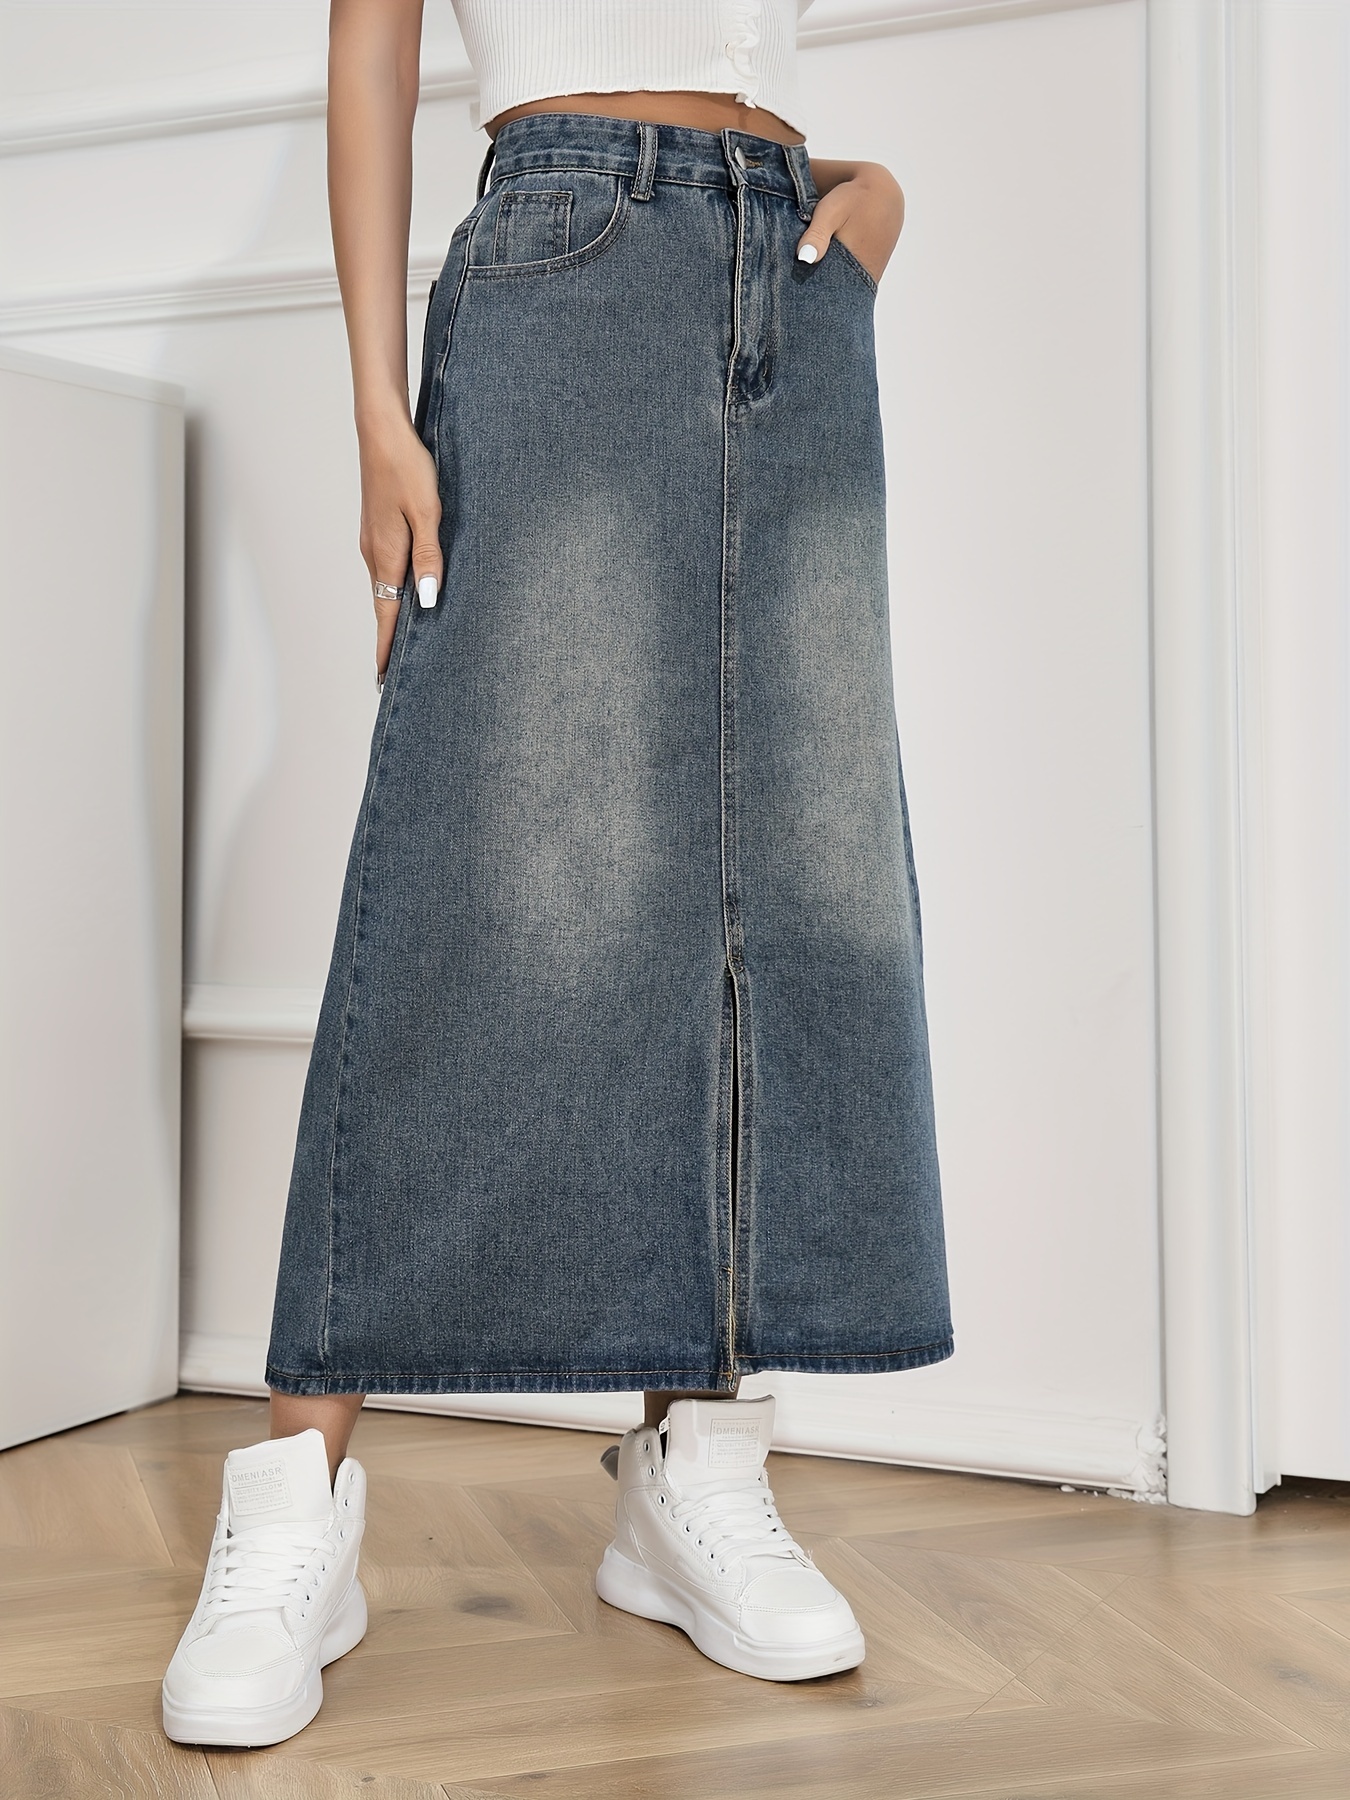 Jeans Skirt For Women Long - Temu